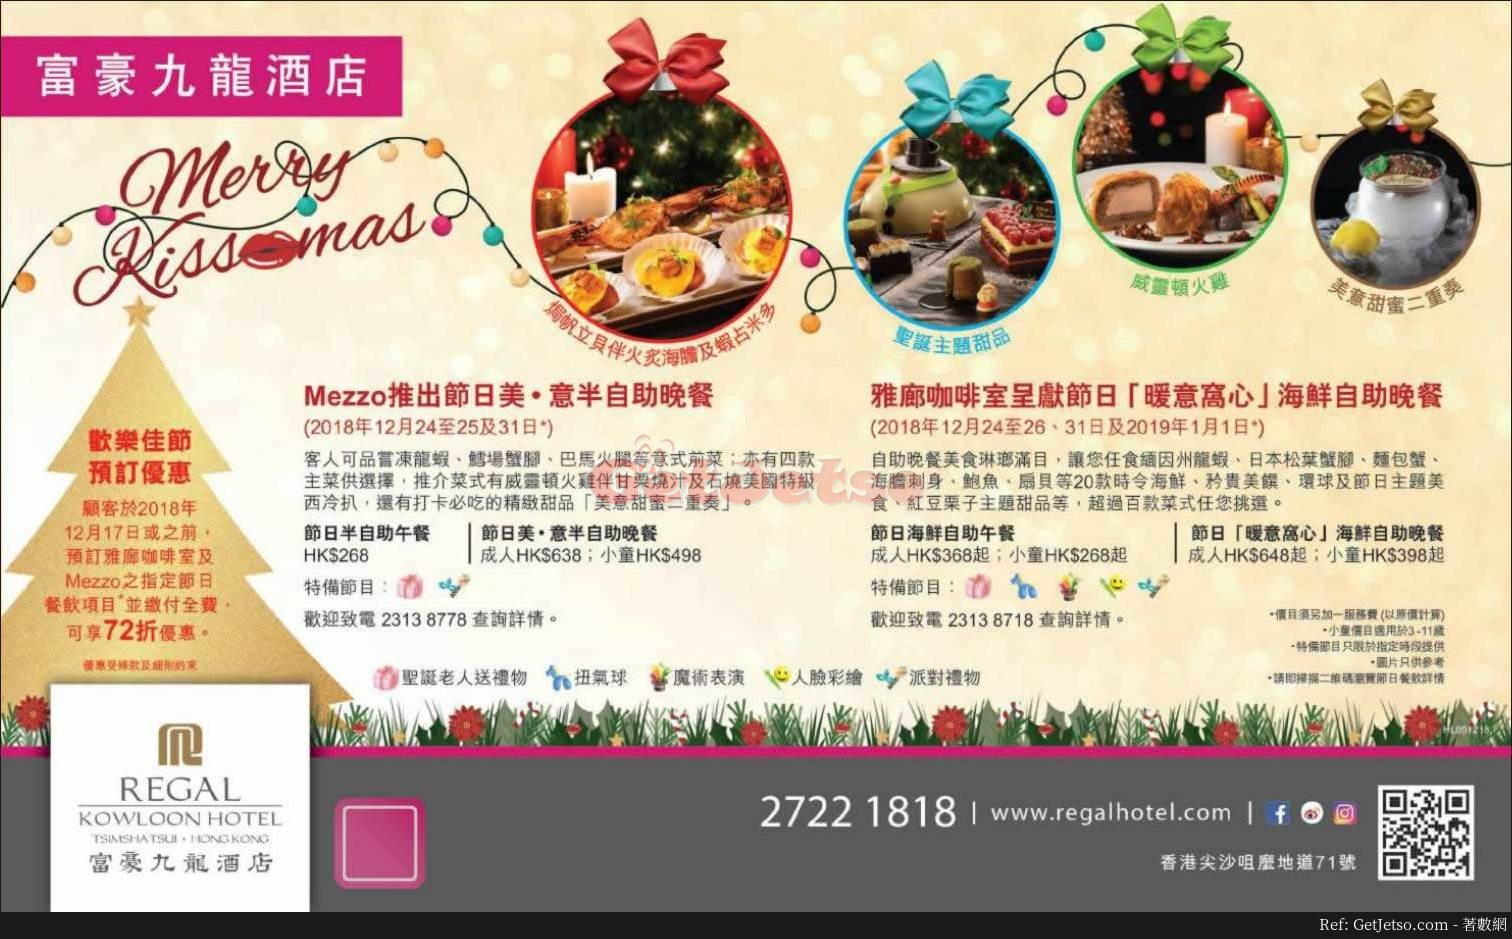 富豪九龍酒店低至72折聖誕自助餐預訂優惠(至18年12月17日)圖片1